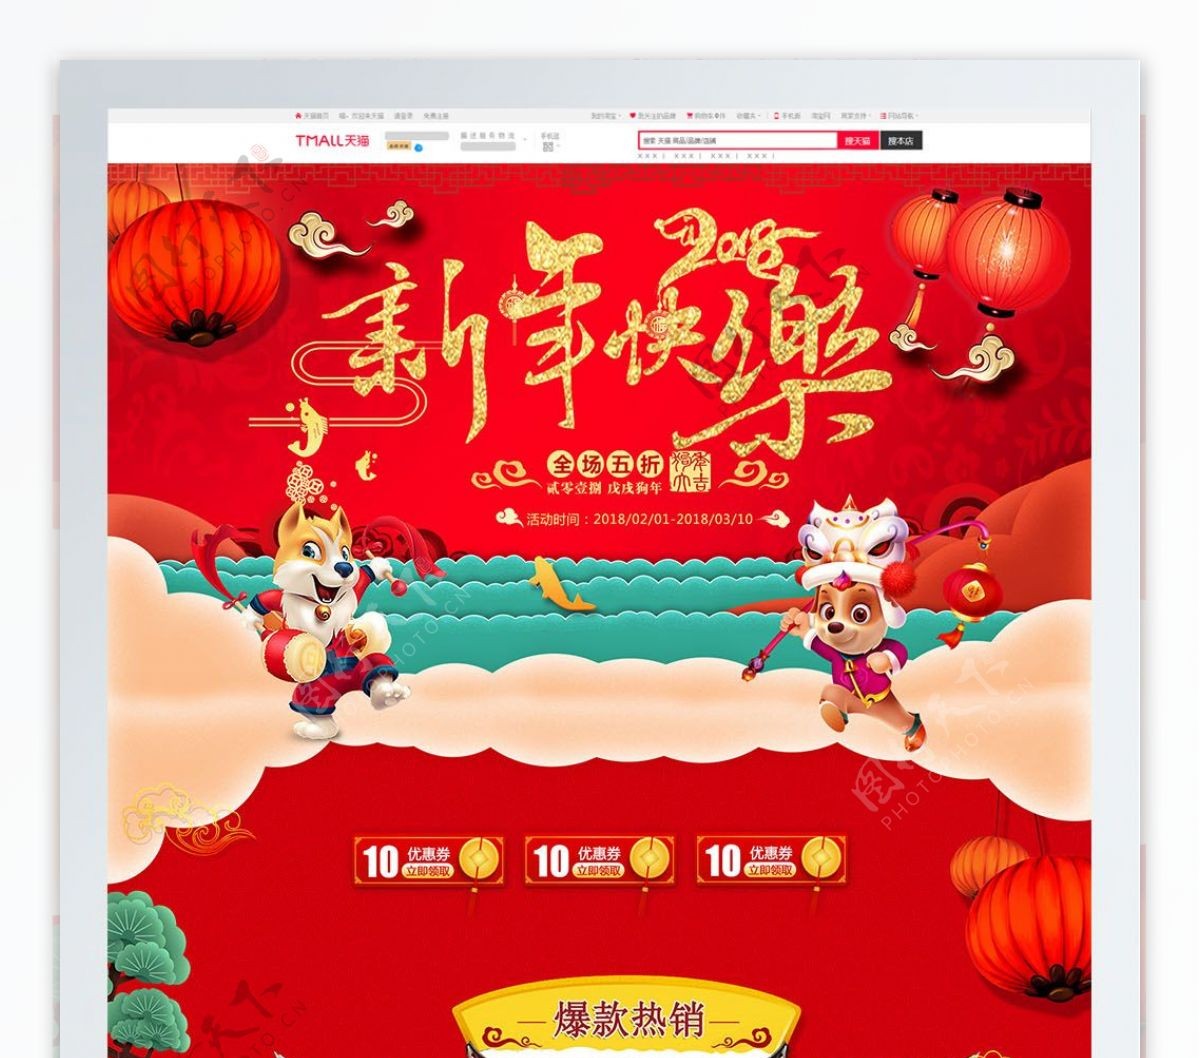 红色中国风新年主题家用电器首页促销模版